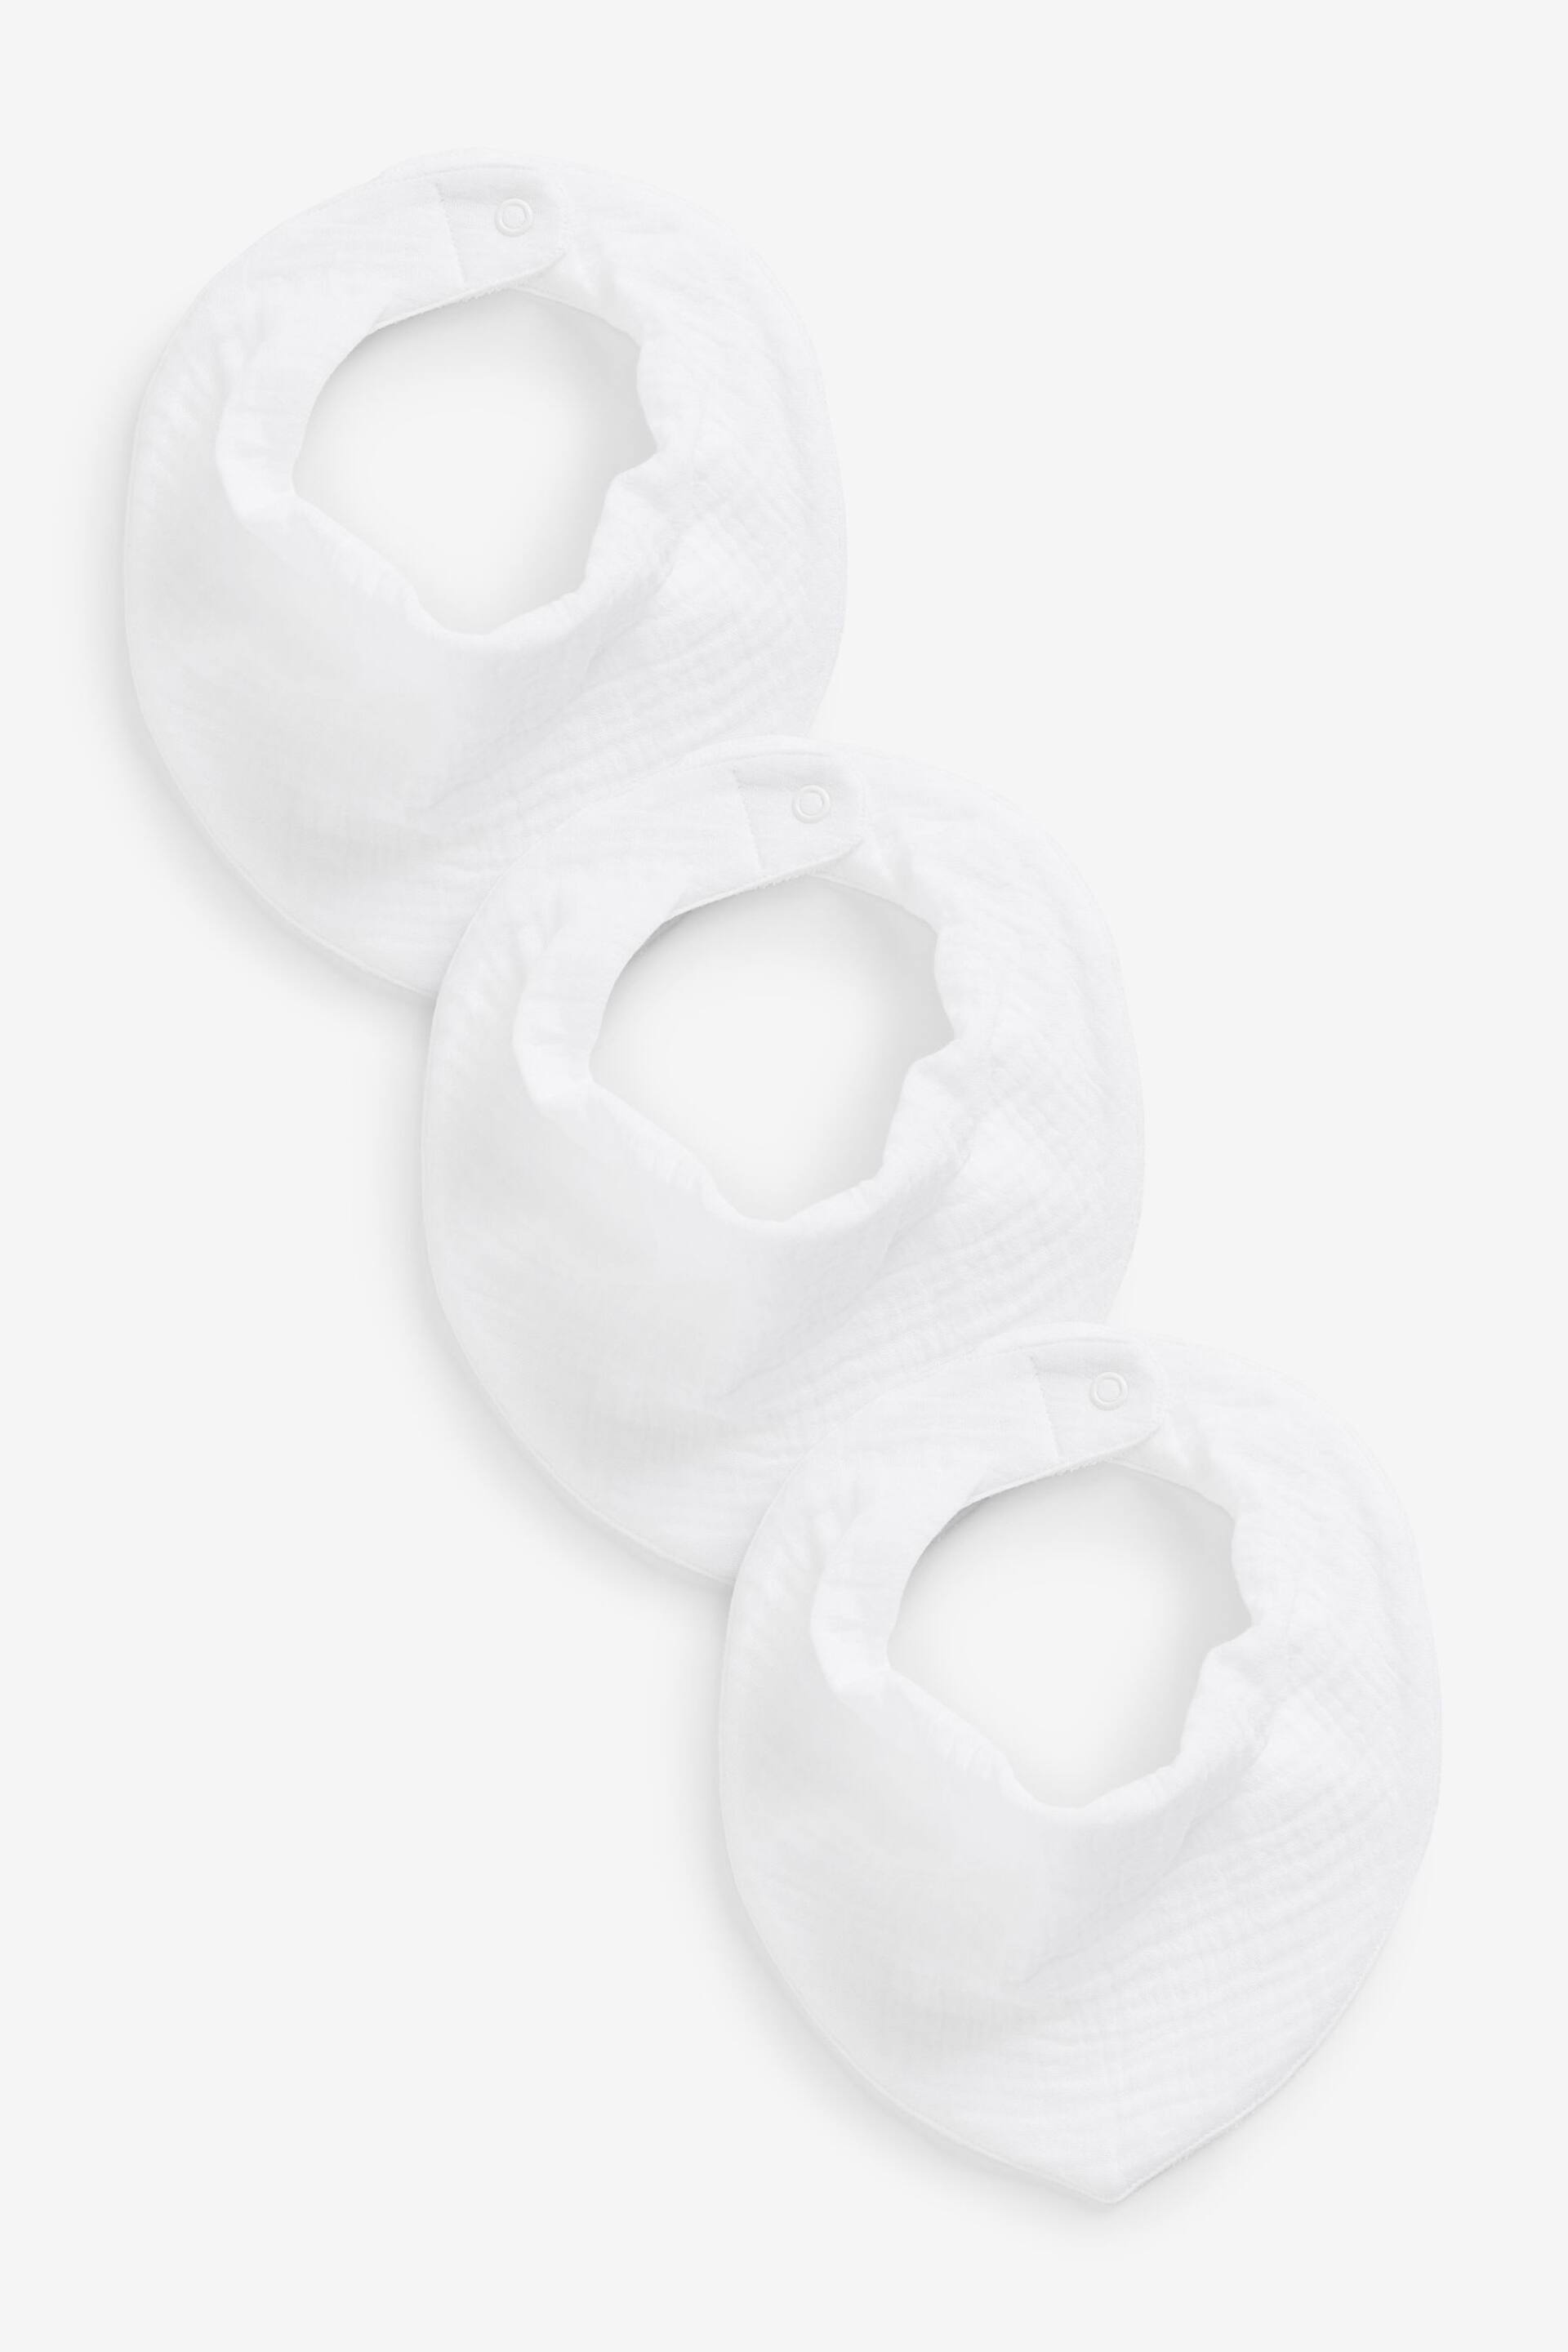 White Muslin Baby Dribble Bibs 3 Pack - Image 1 of 1